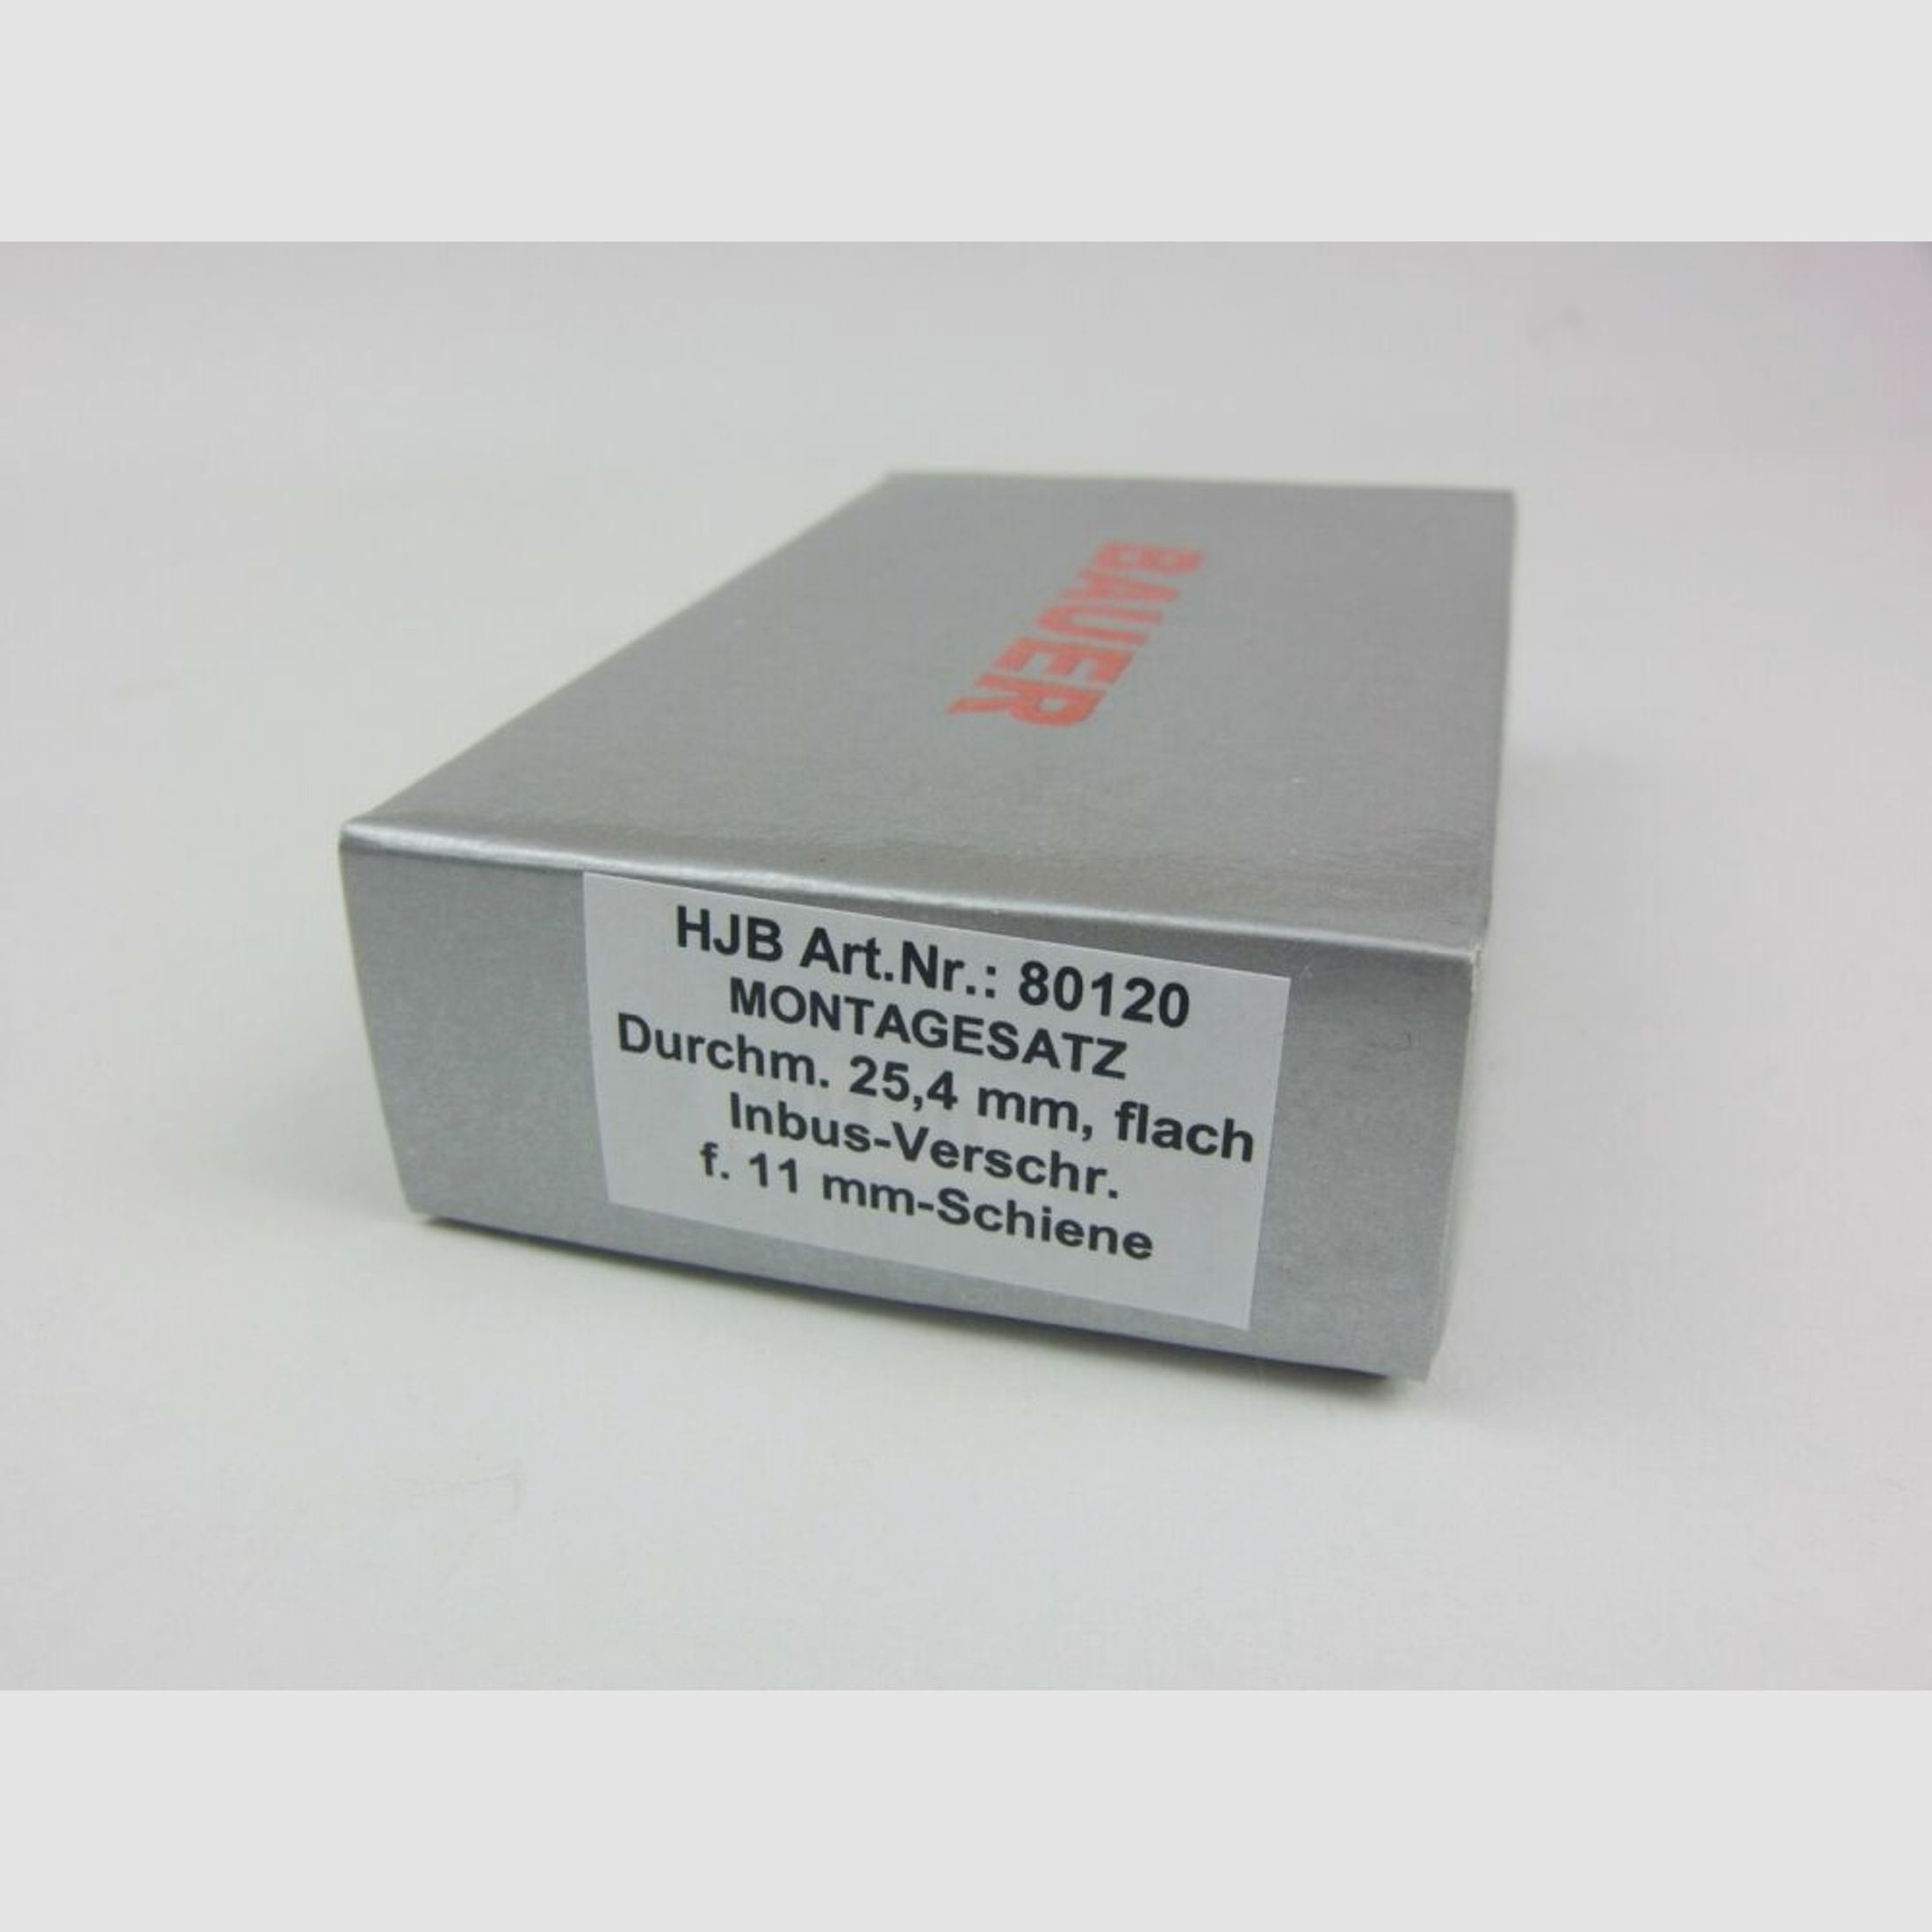 Bauer	 HJB Bauer - 11mm Prisma für 25,4mm Tubus (1Zoll) - flach